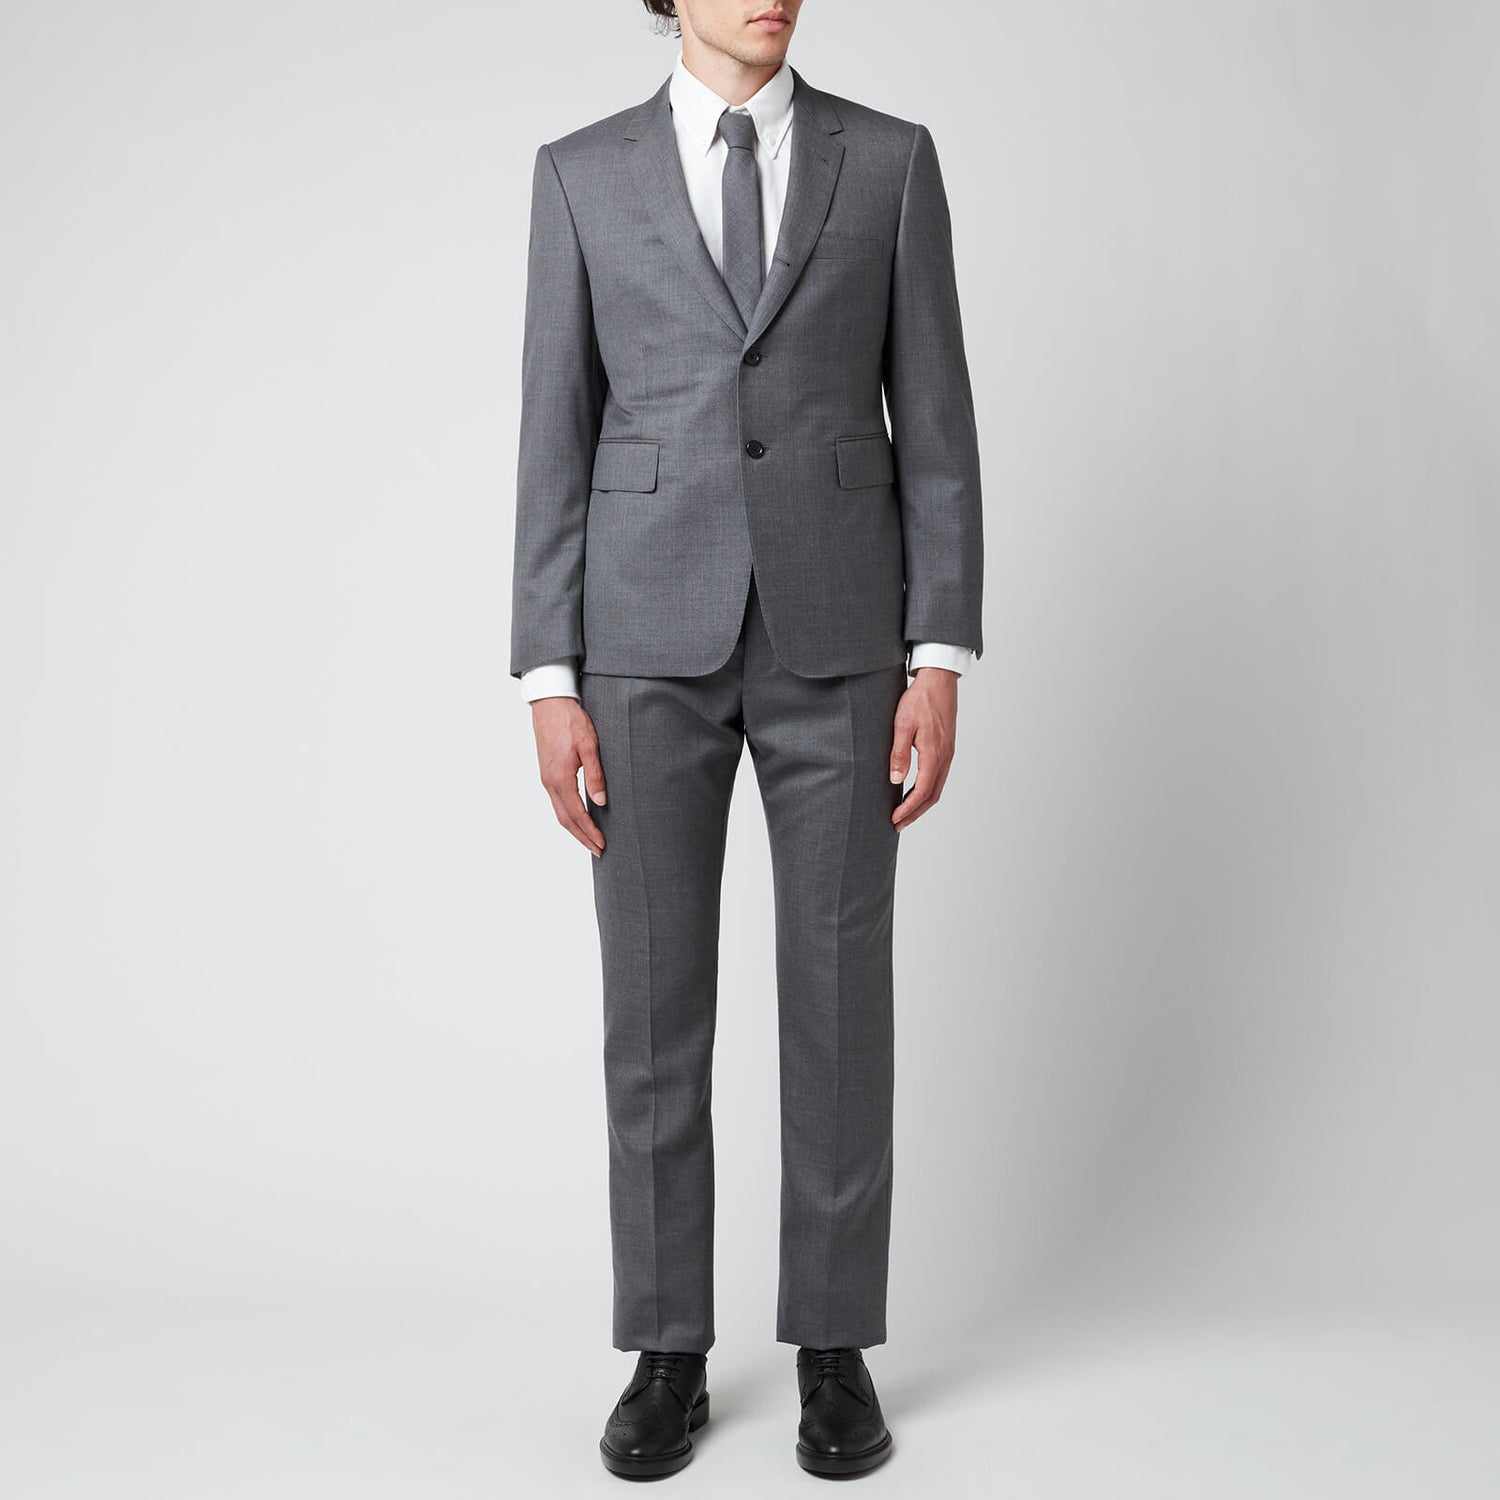 Thom Browne Men's Classic Twill Super 120 Suit - Medium Grey - 1/S